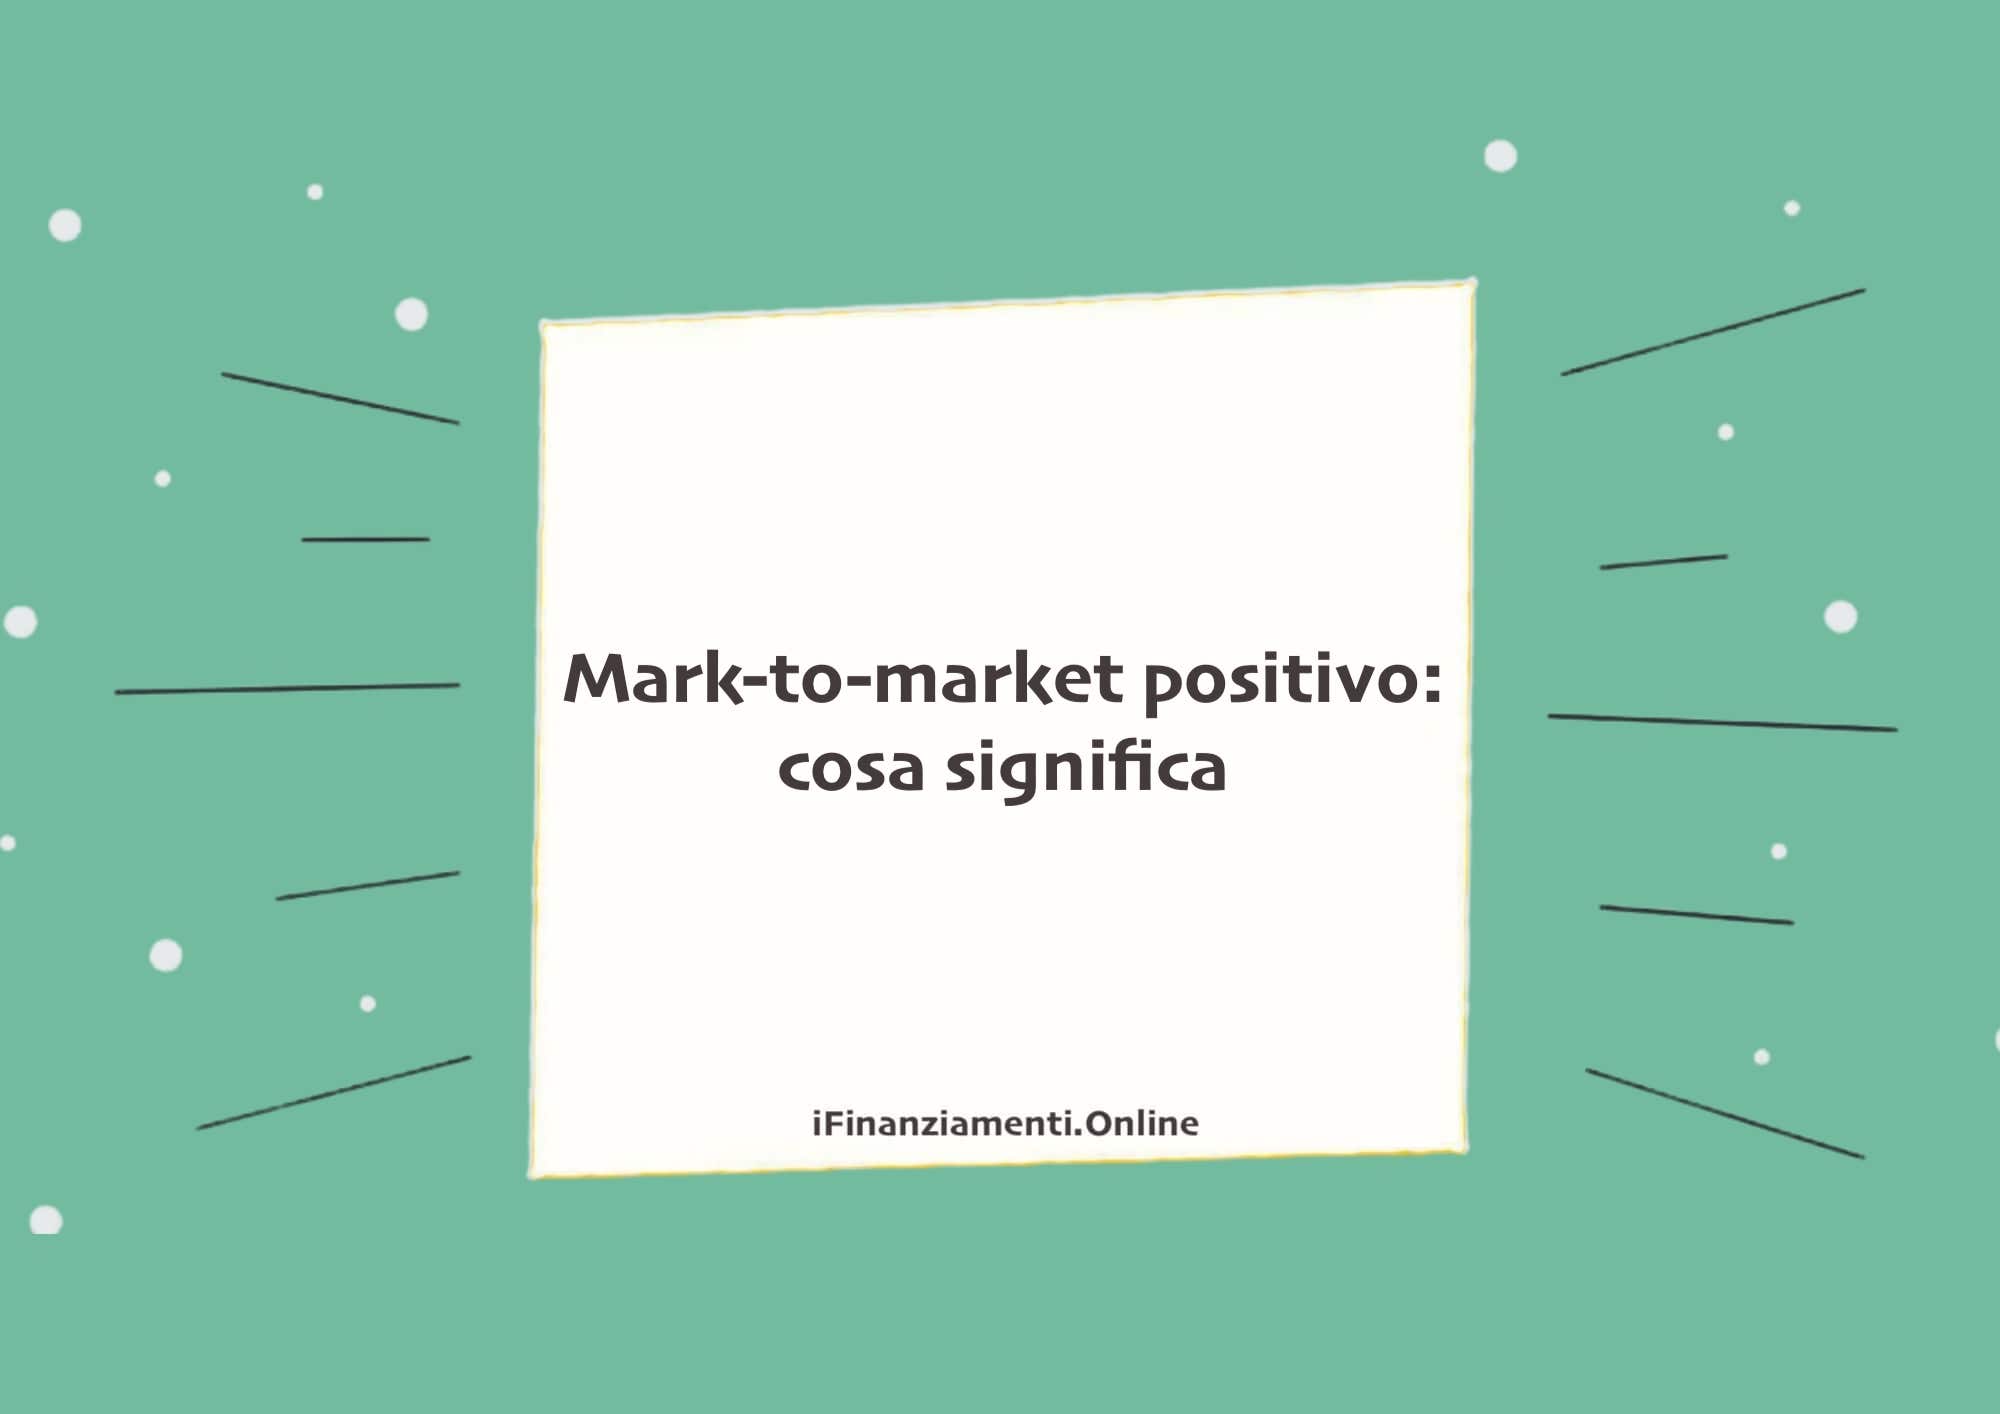 Mark-to-market positivo: cosa significa